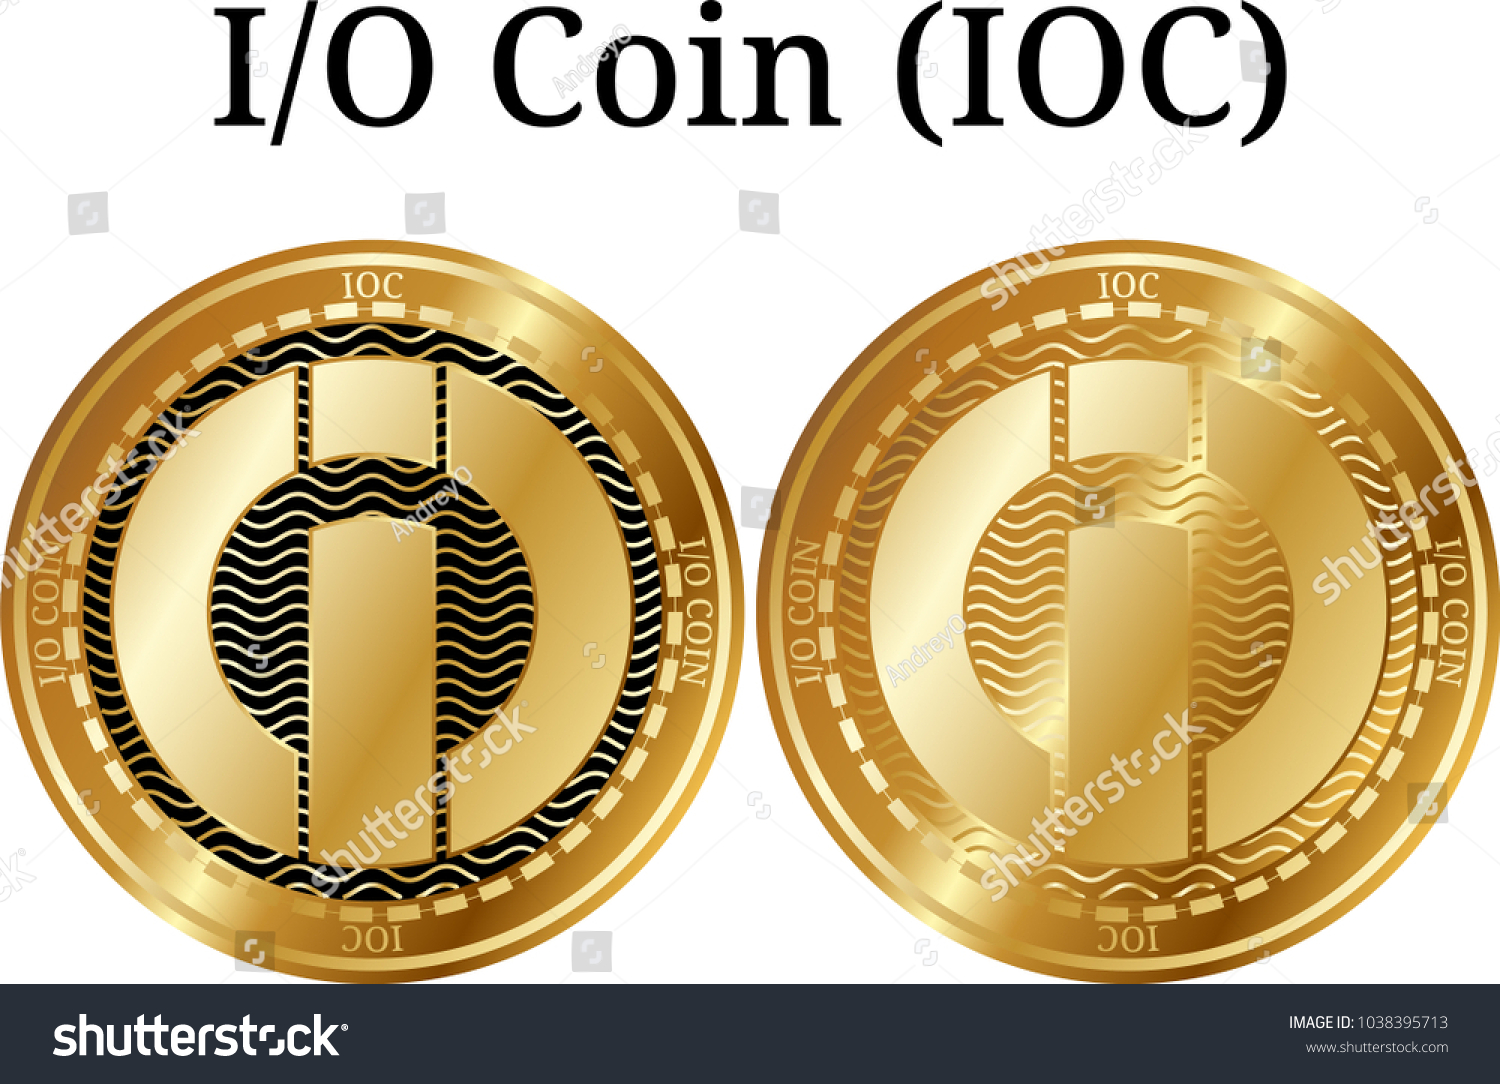 I0c crypto currency stocks plasma implementation ethereum